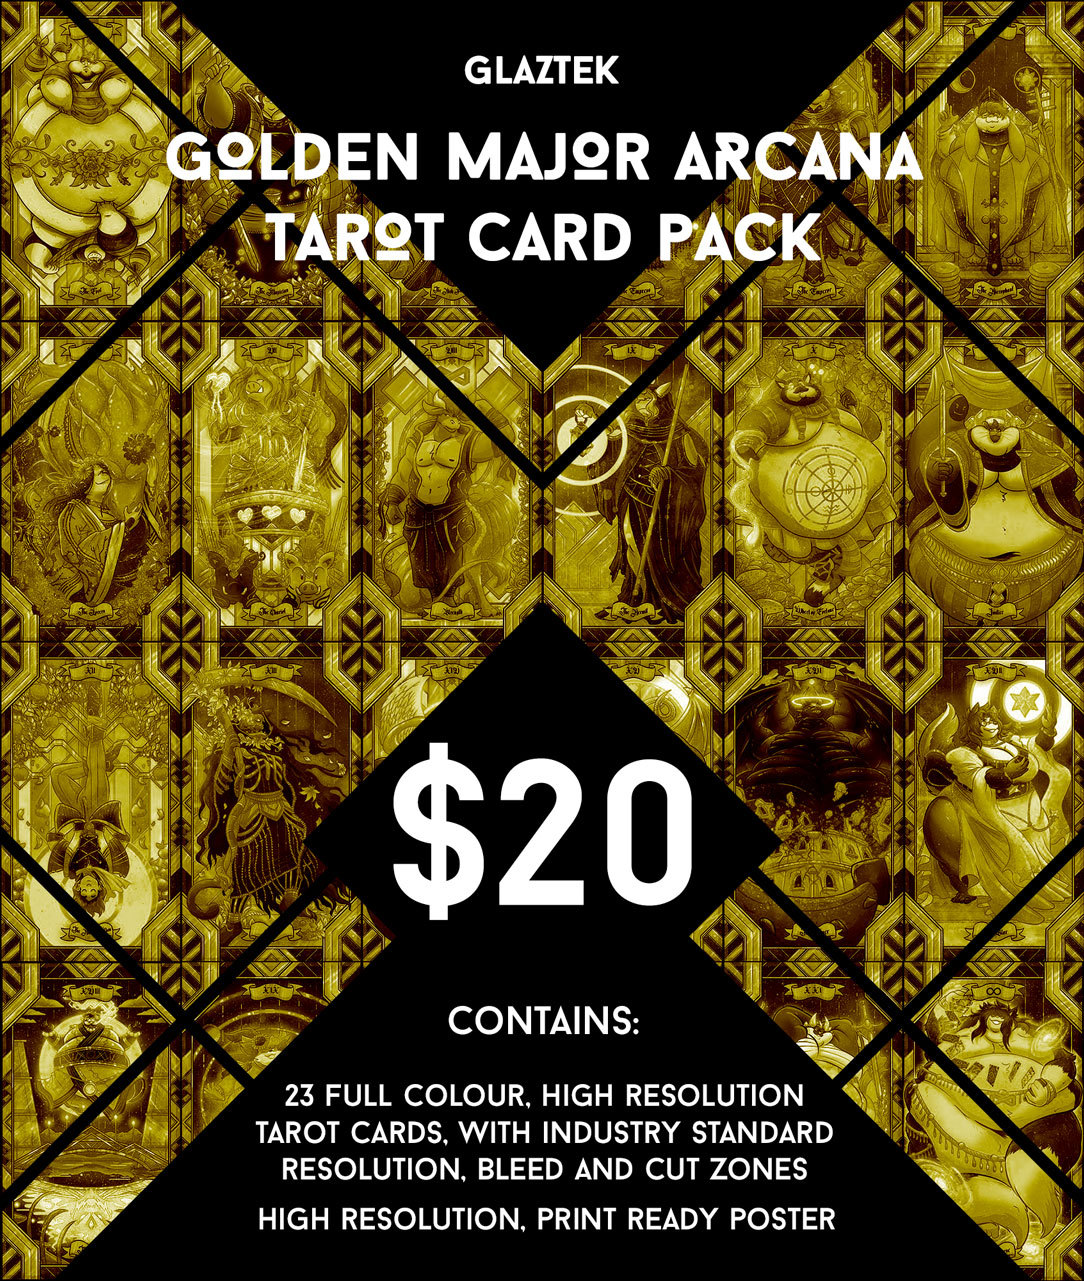 doodleglaz:    Glaztek presents the Golden Major Arcana Tarot Card Pack! https://gumroad.com/l/glaztarotDue